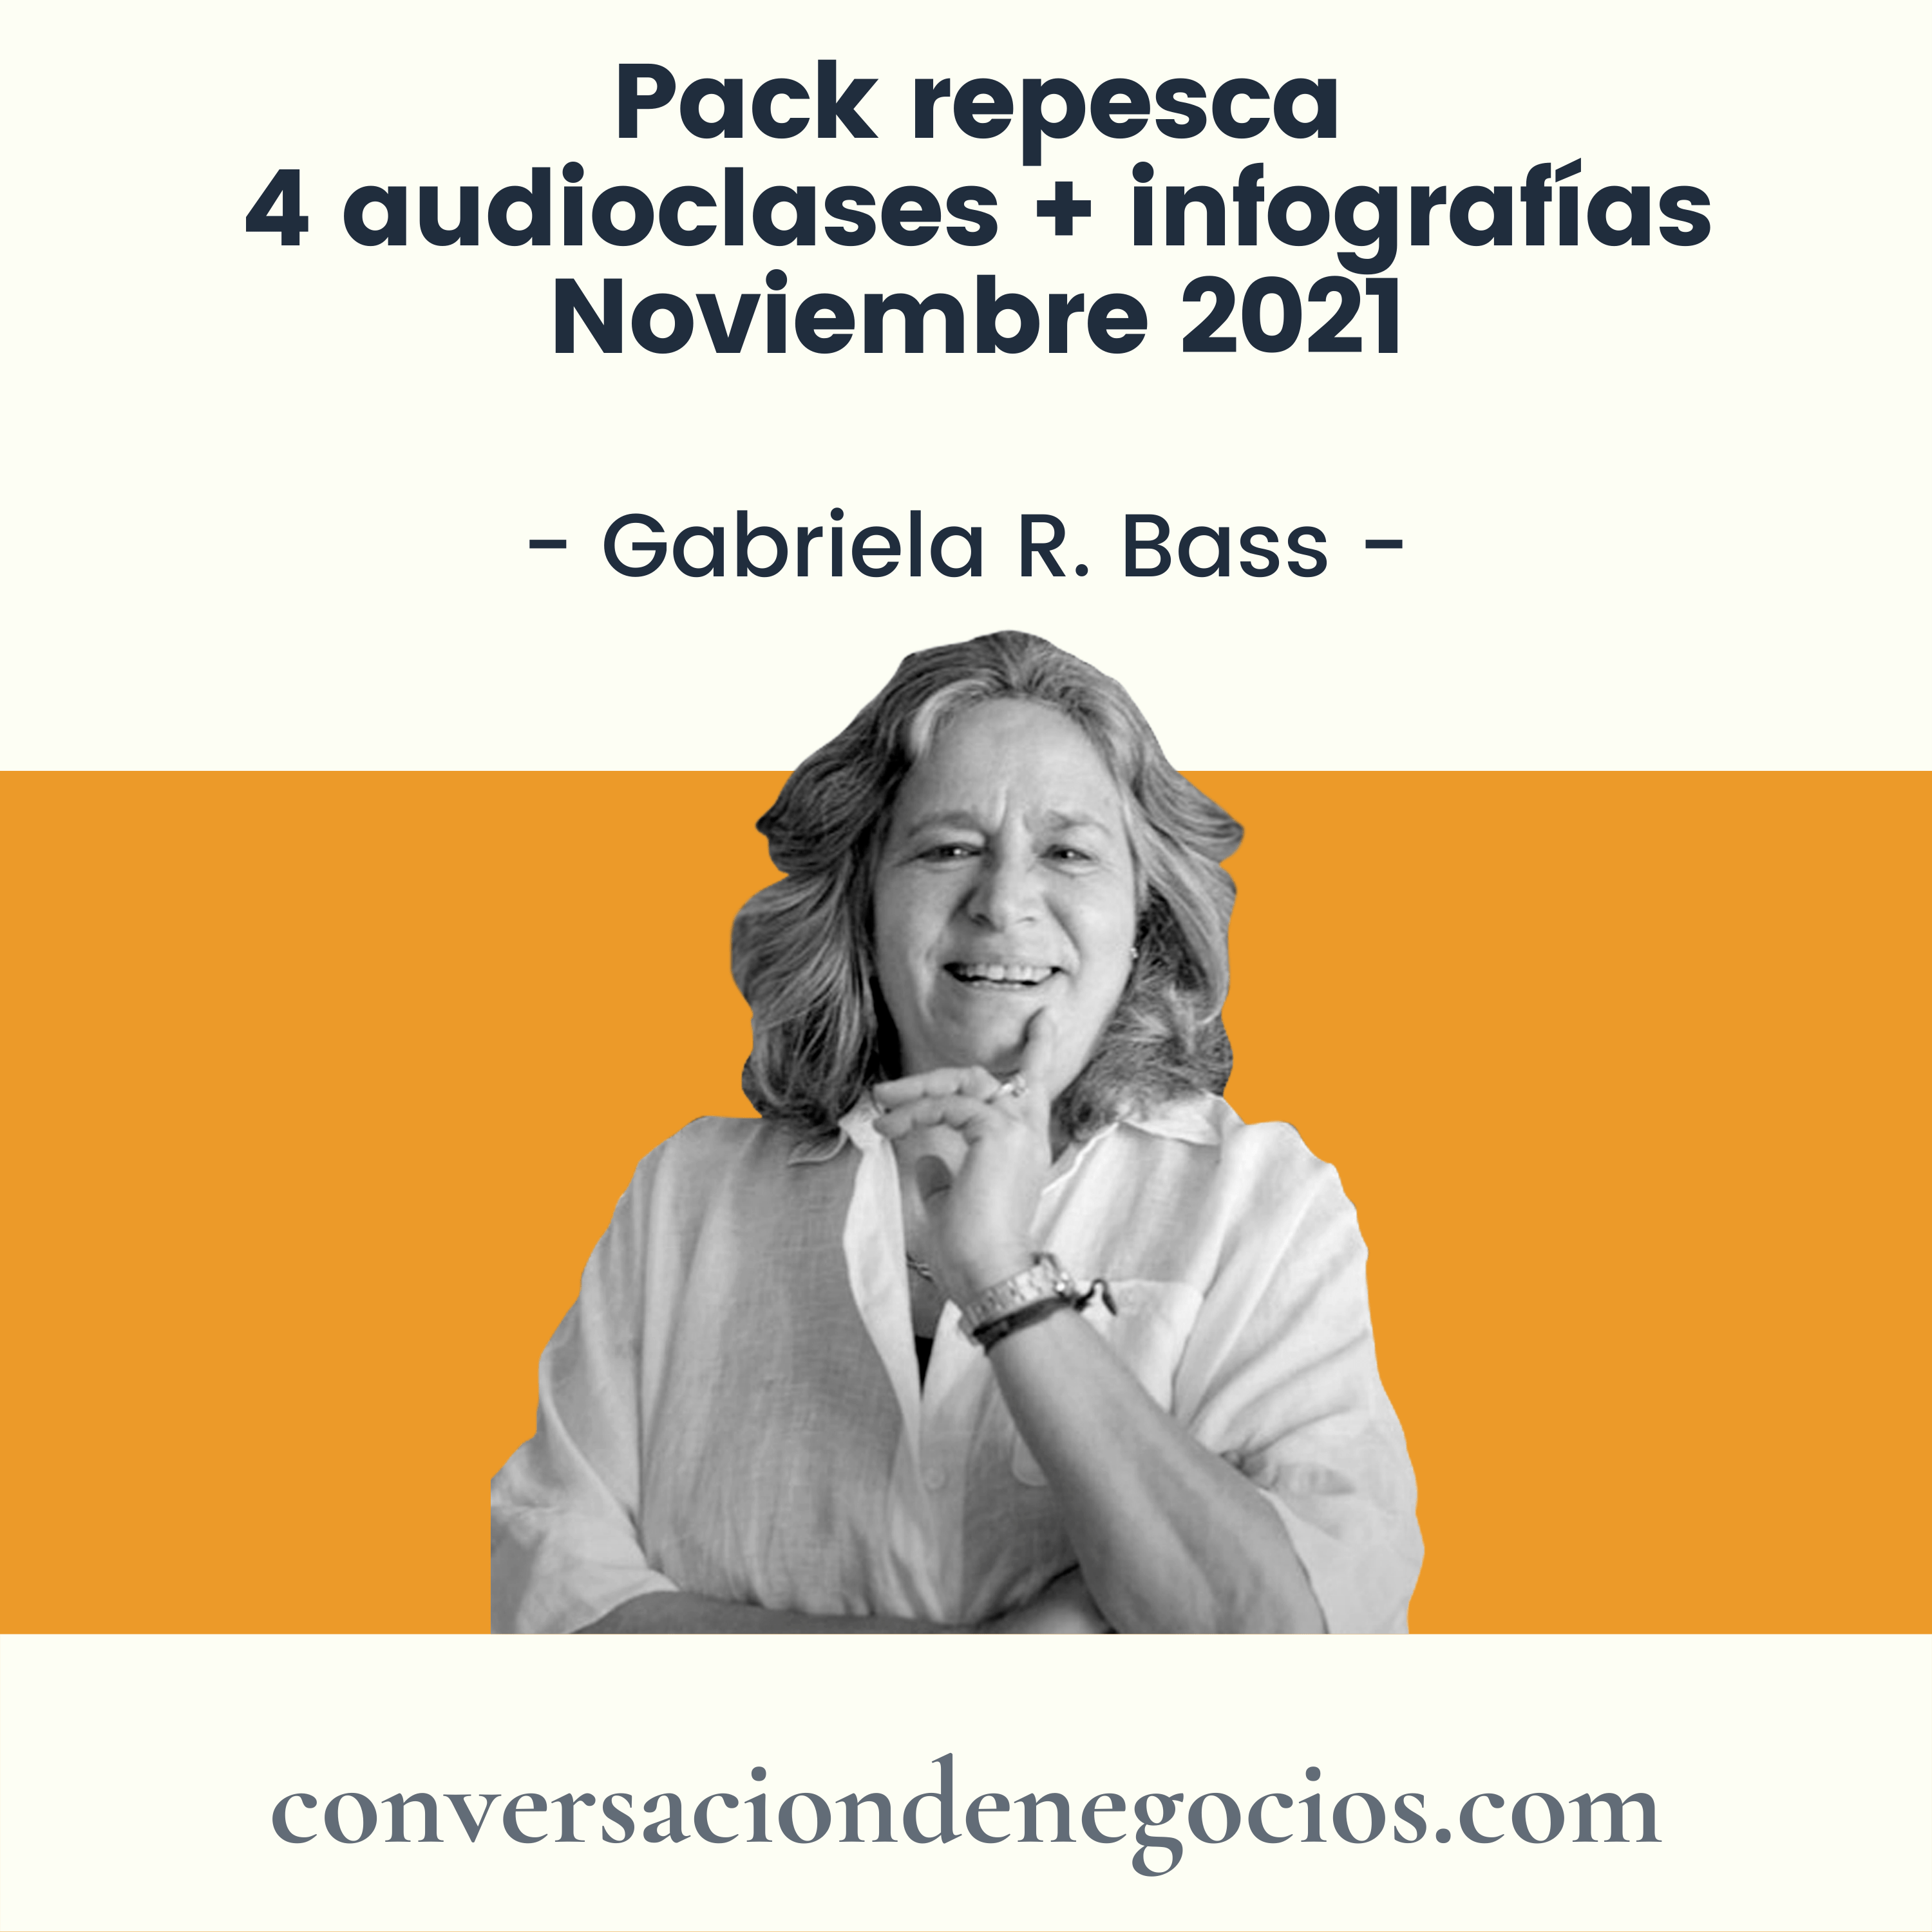 Pack Repesca Audio-MBA - Clases + infografías - Noviembre 2021